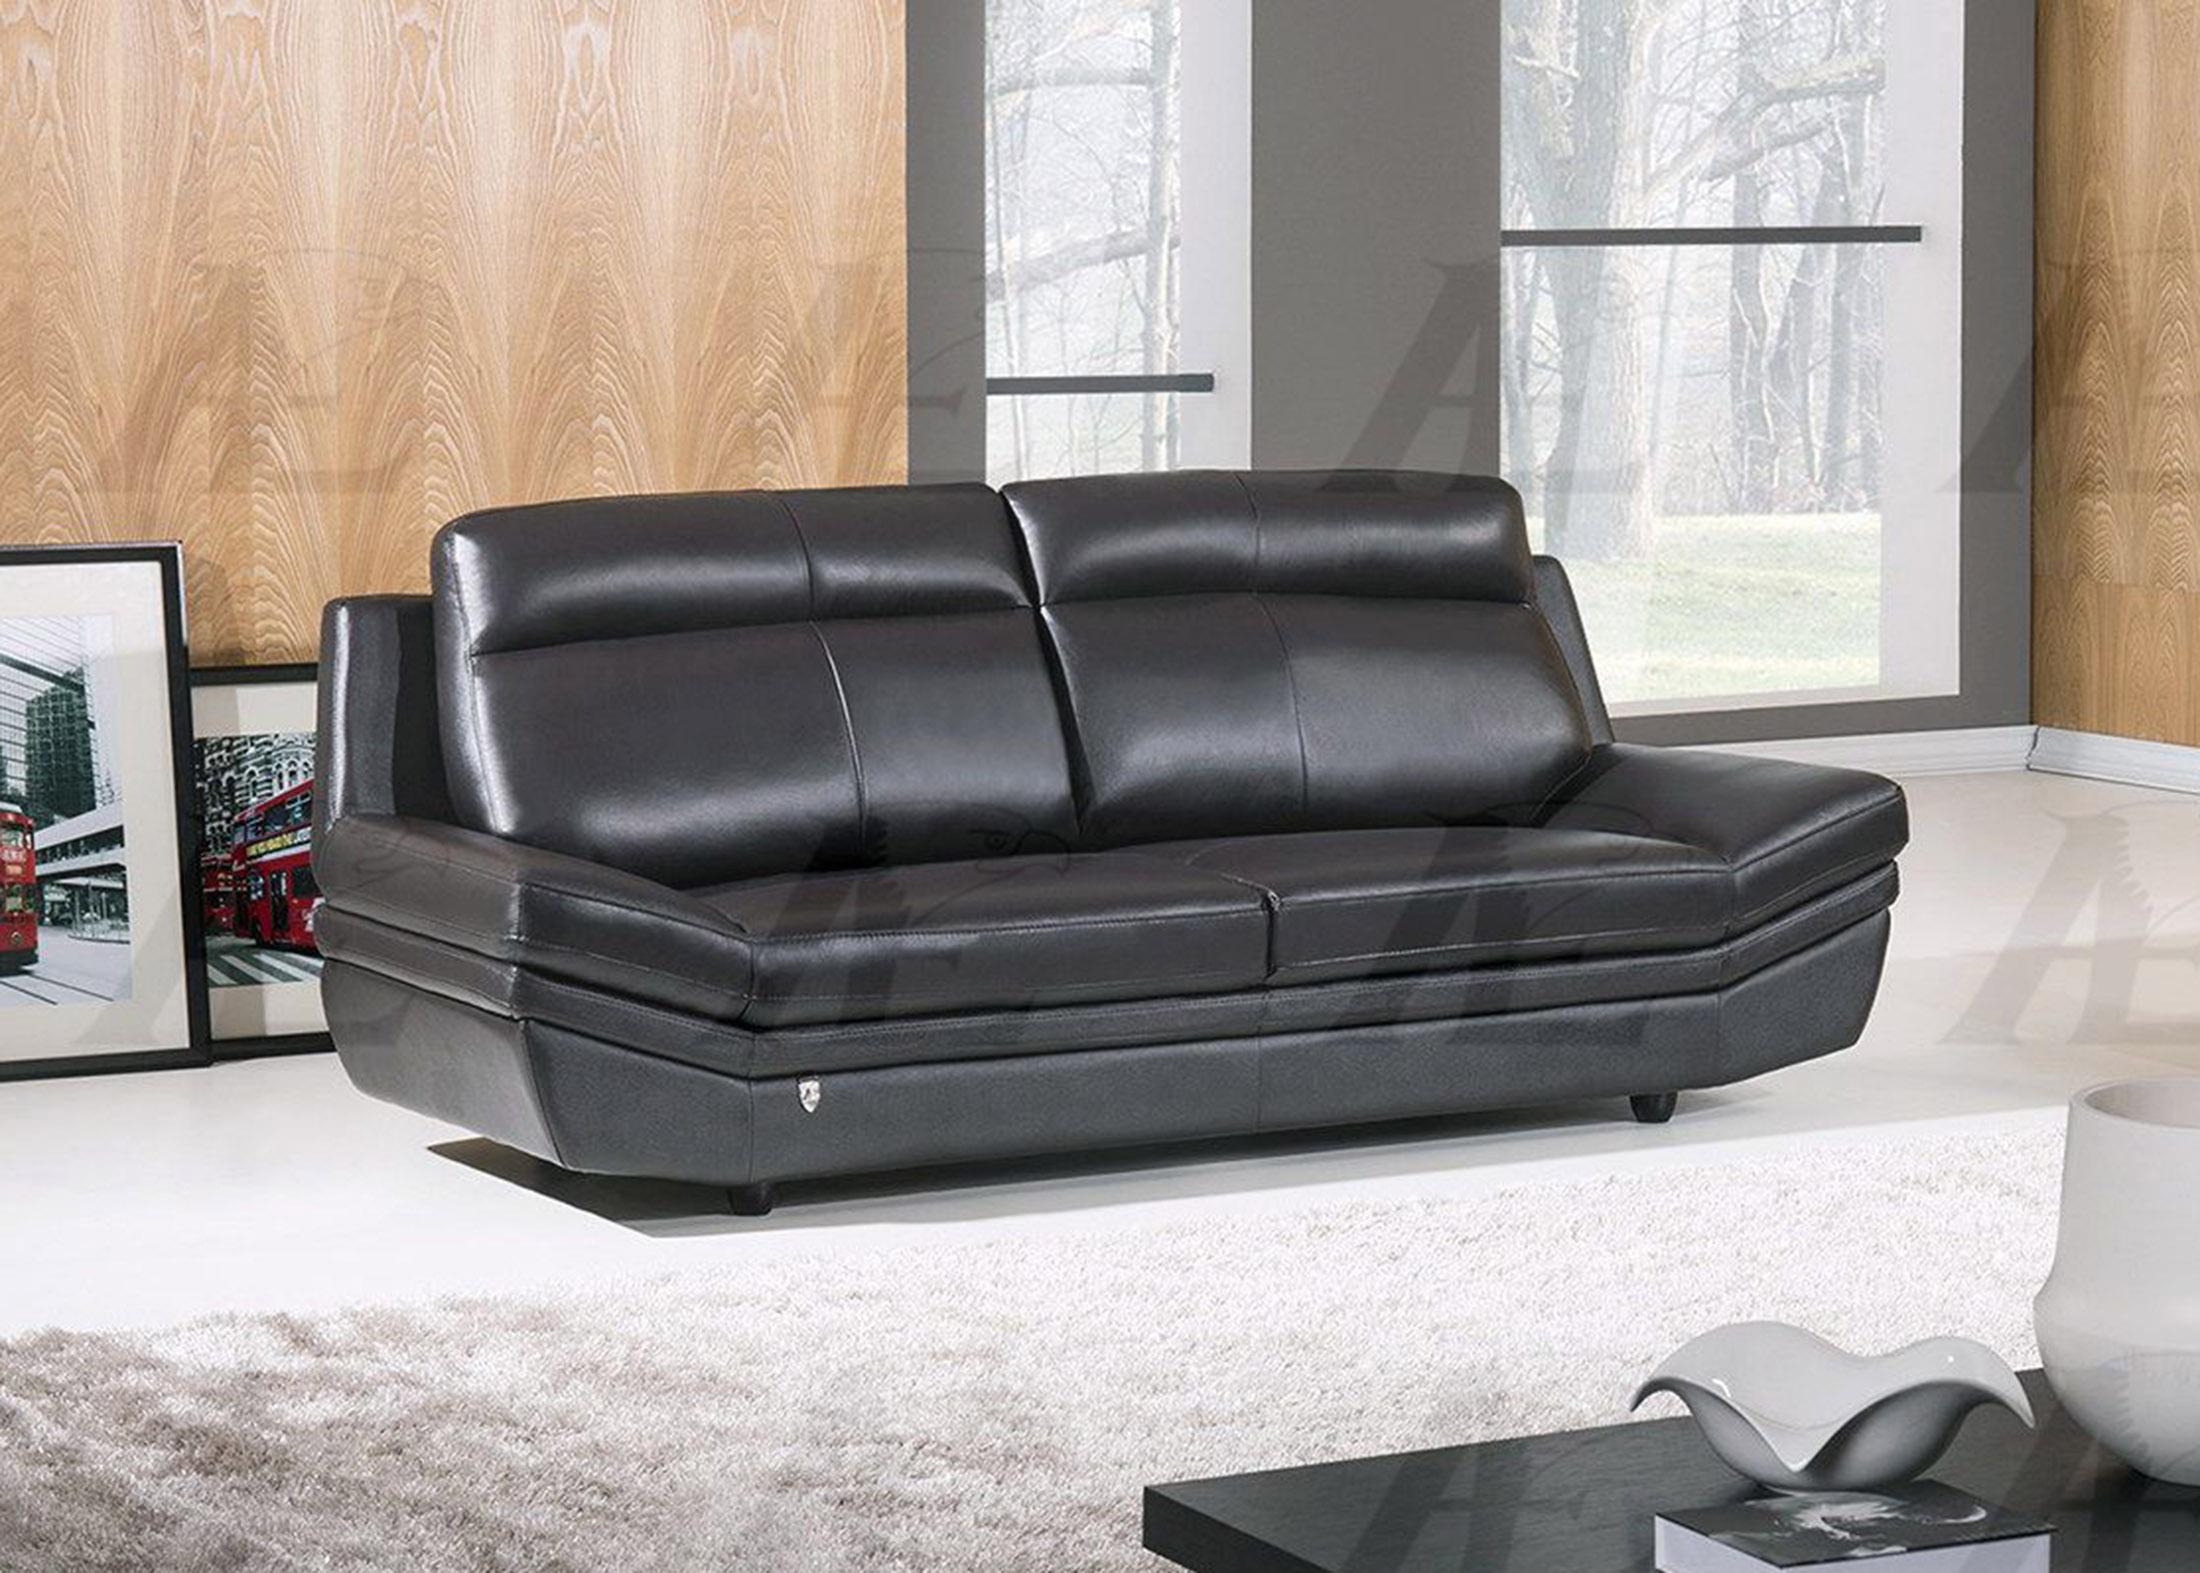 

    
American Eagle Furniture EK075-BK Black Sofa Italian Leather Modern
